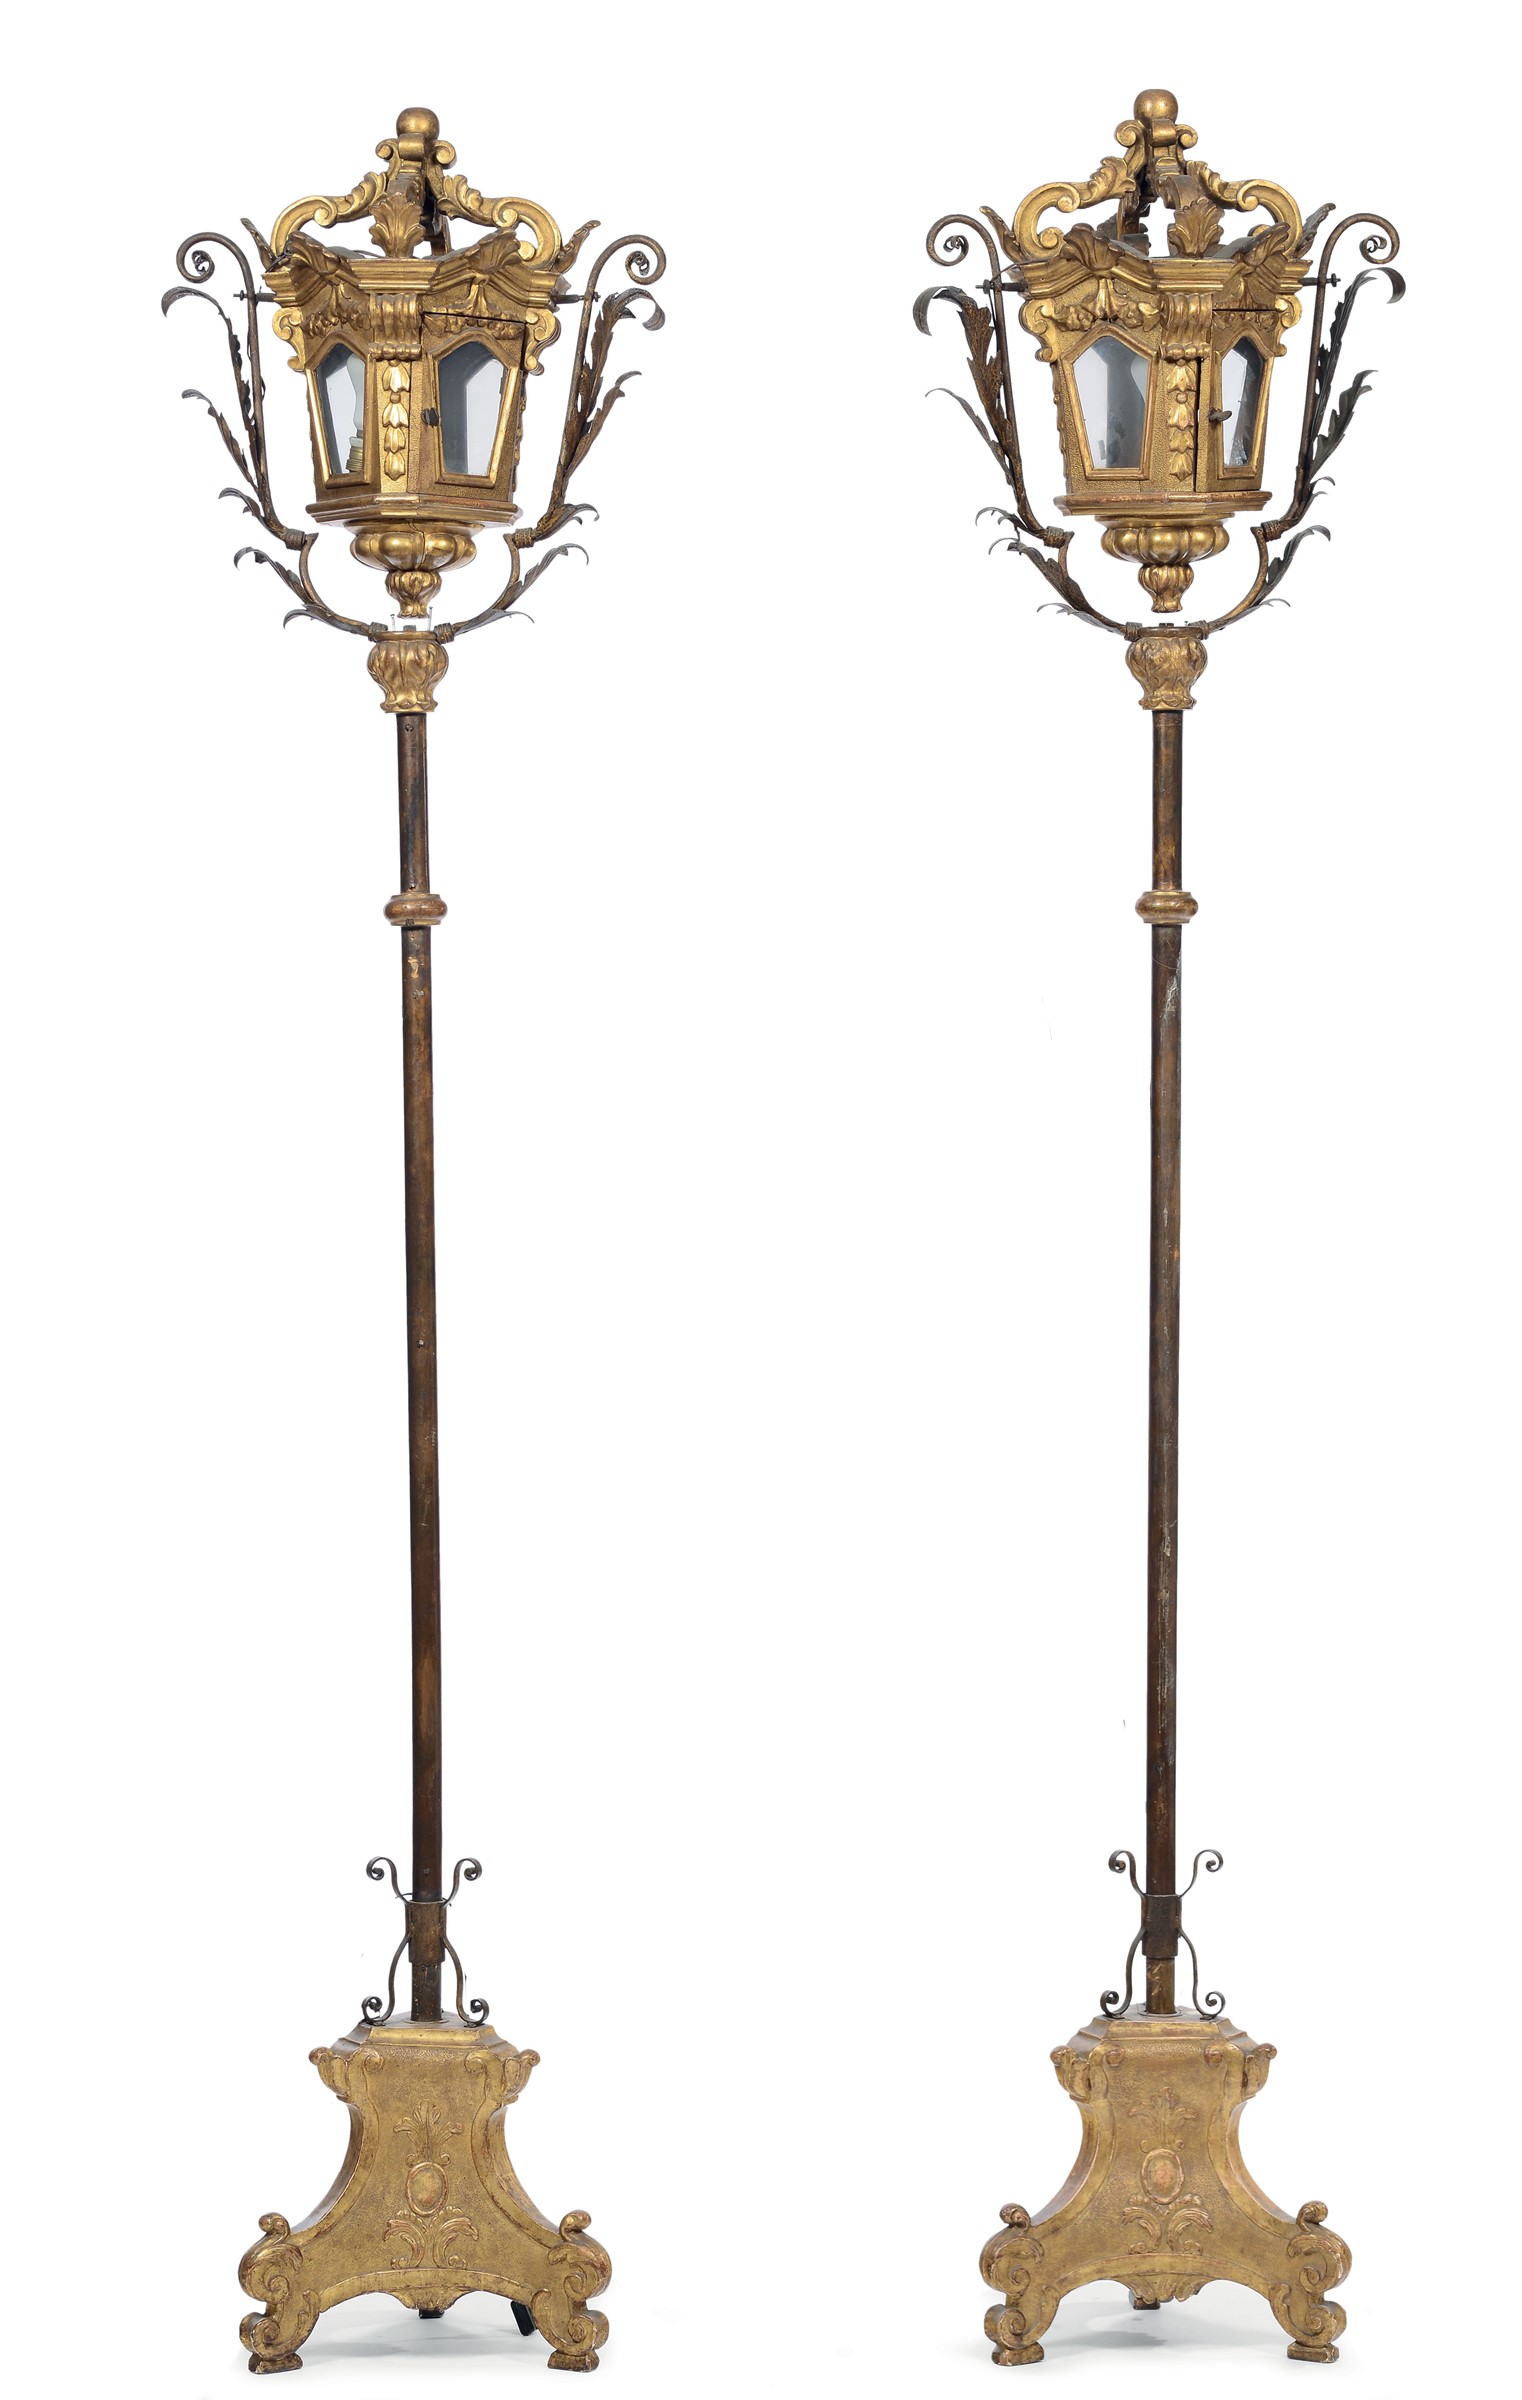 Coppia di lanterne in legno intagliato e dorato, XVIII secolo , montate su aste in ferro battuto